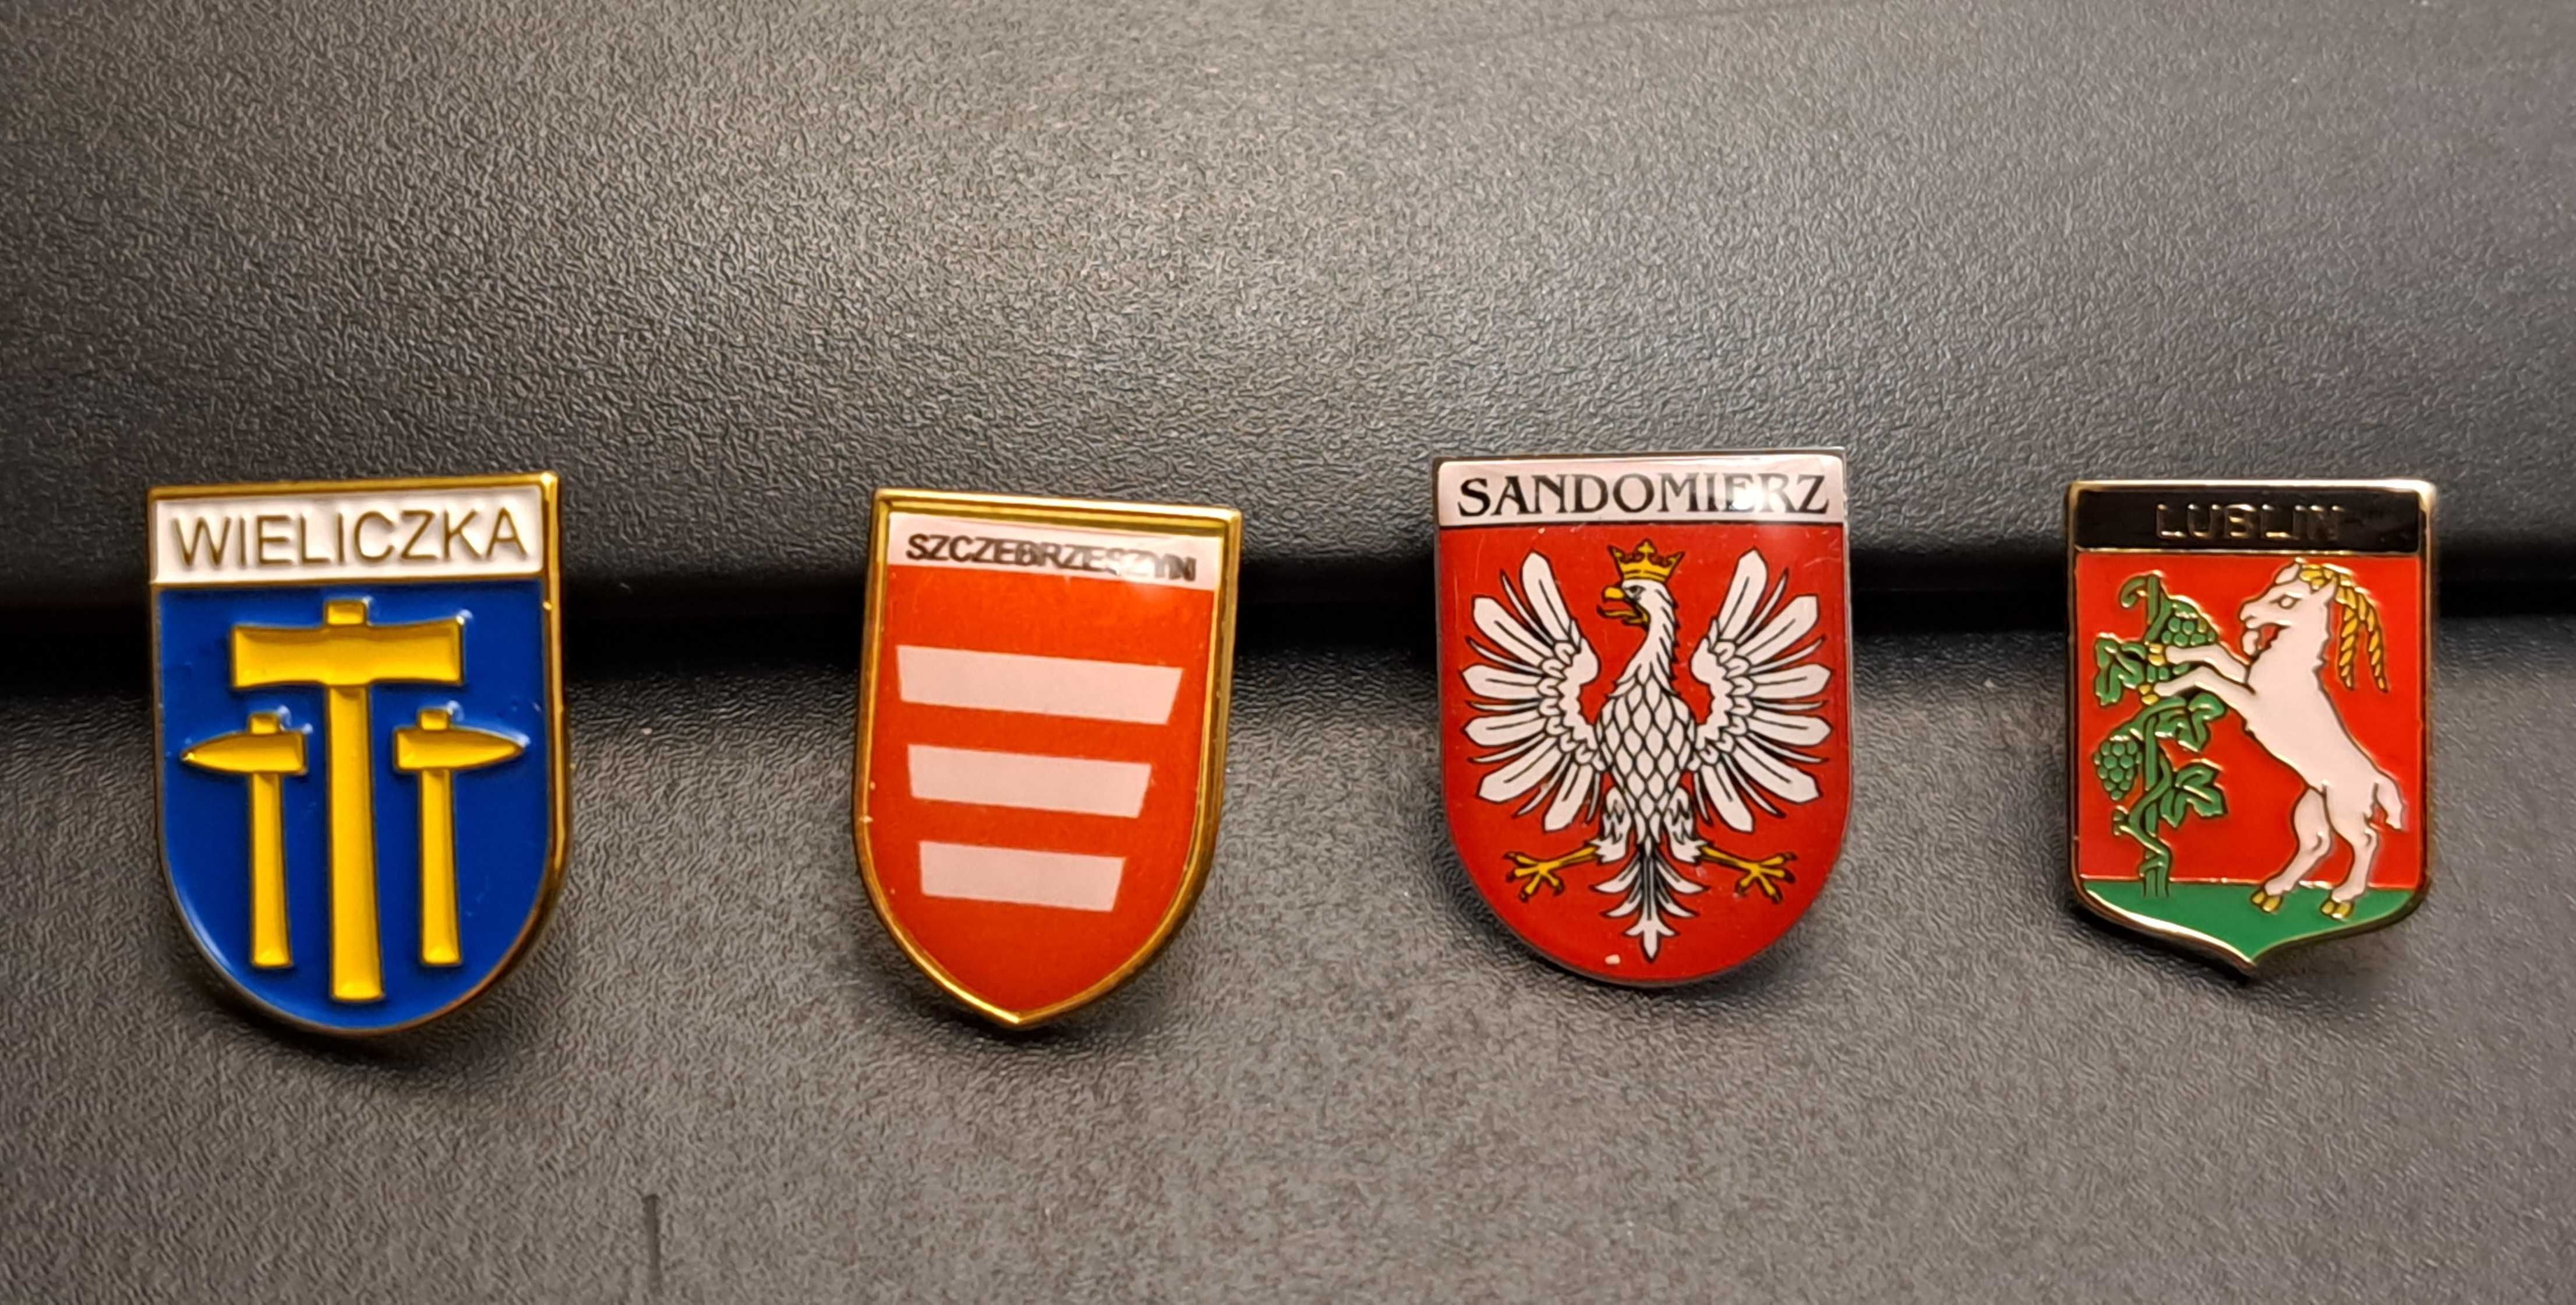 Wpinka odznaka herb x4 Wieliczka Szczebrzeszyn Sandomierz Lublin, nowe